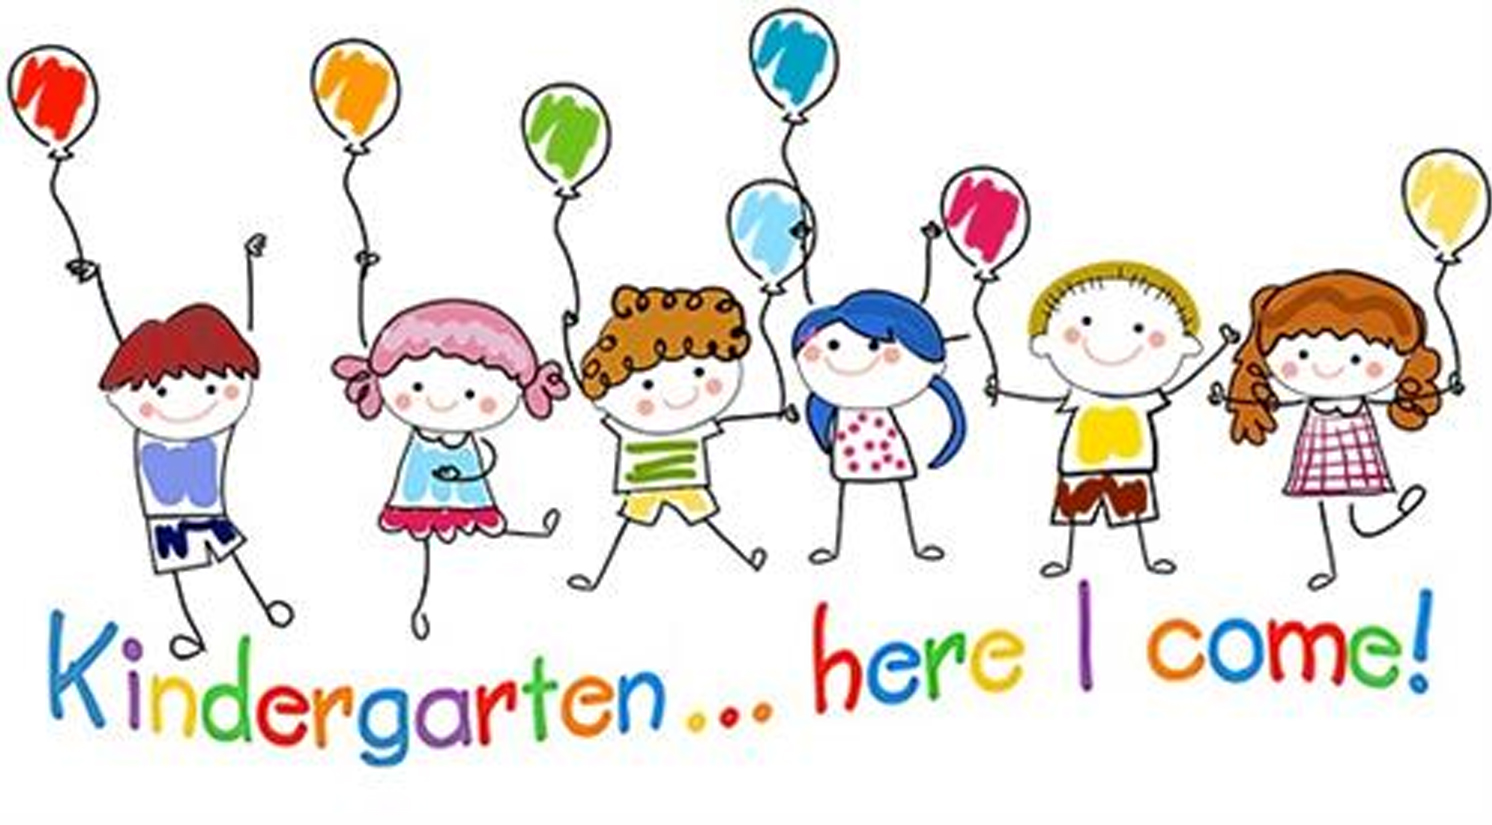 Kindergarten Here I Come cartoon sign